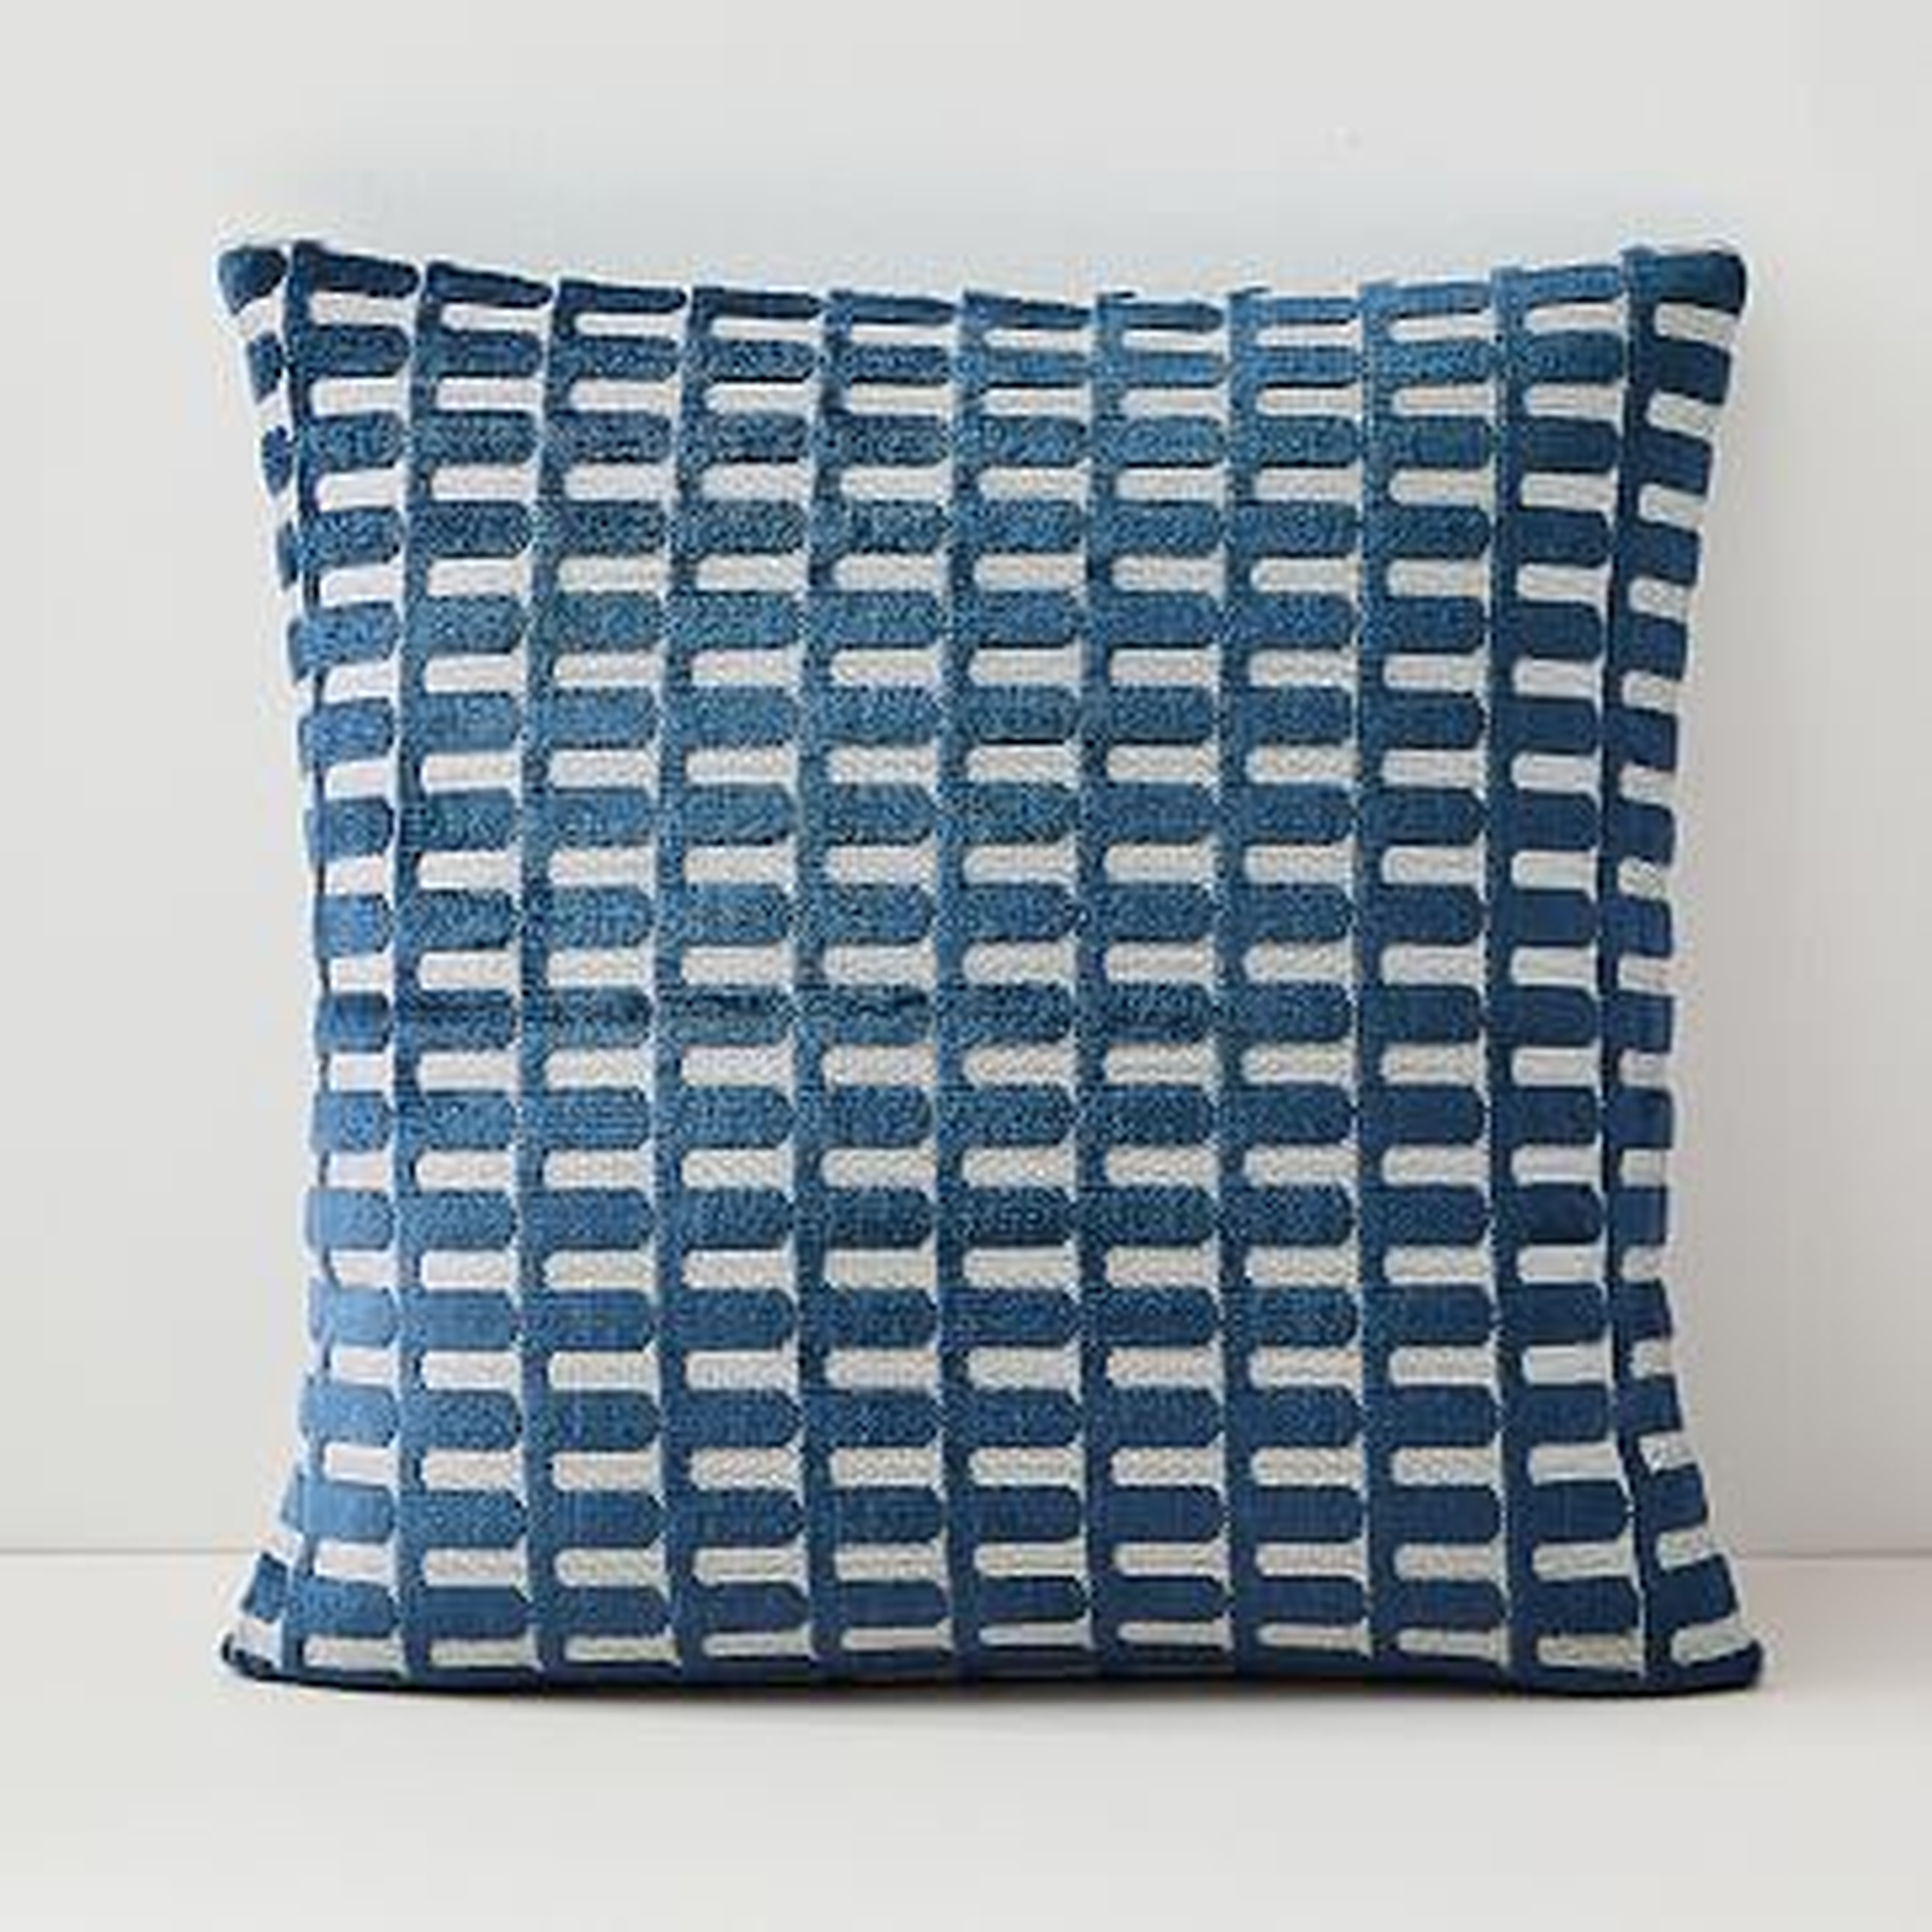 Cut Velvet Archways Pillow Cover, 20"x20", Regal Blue - West Elm